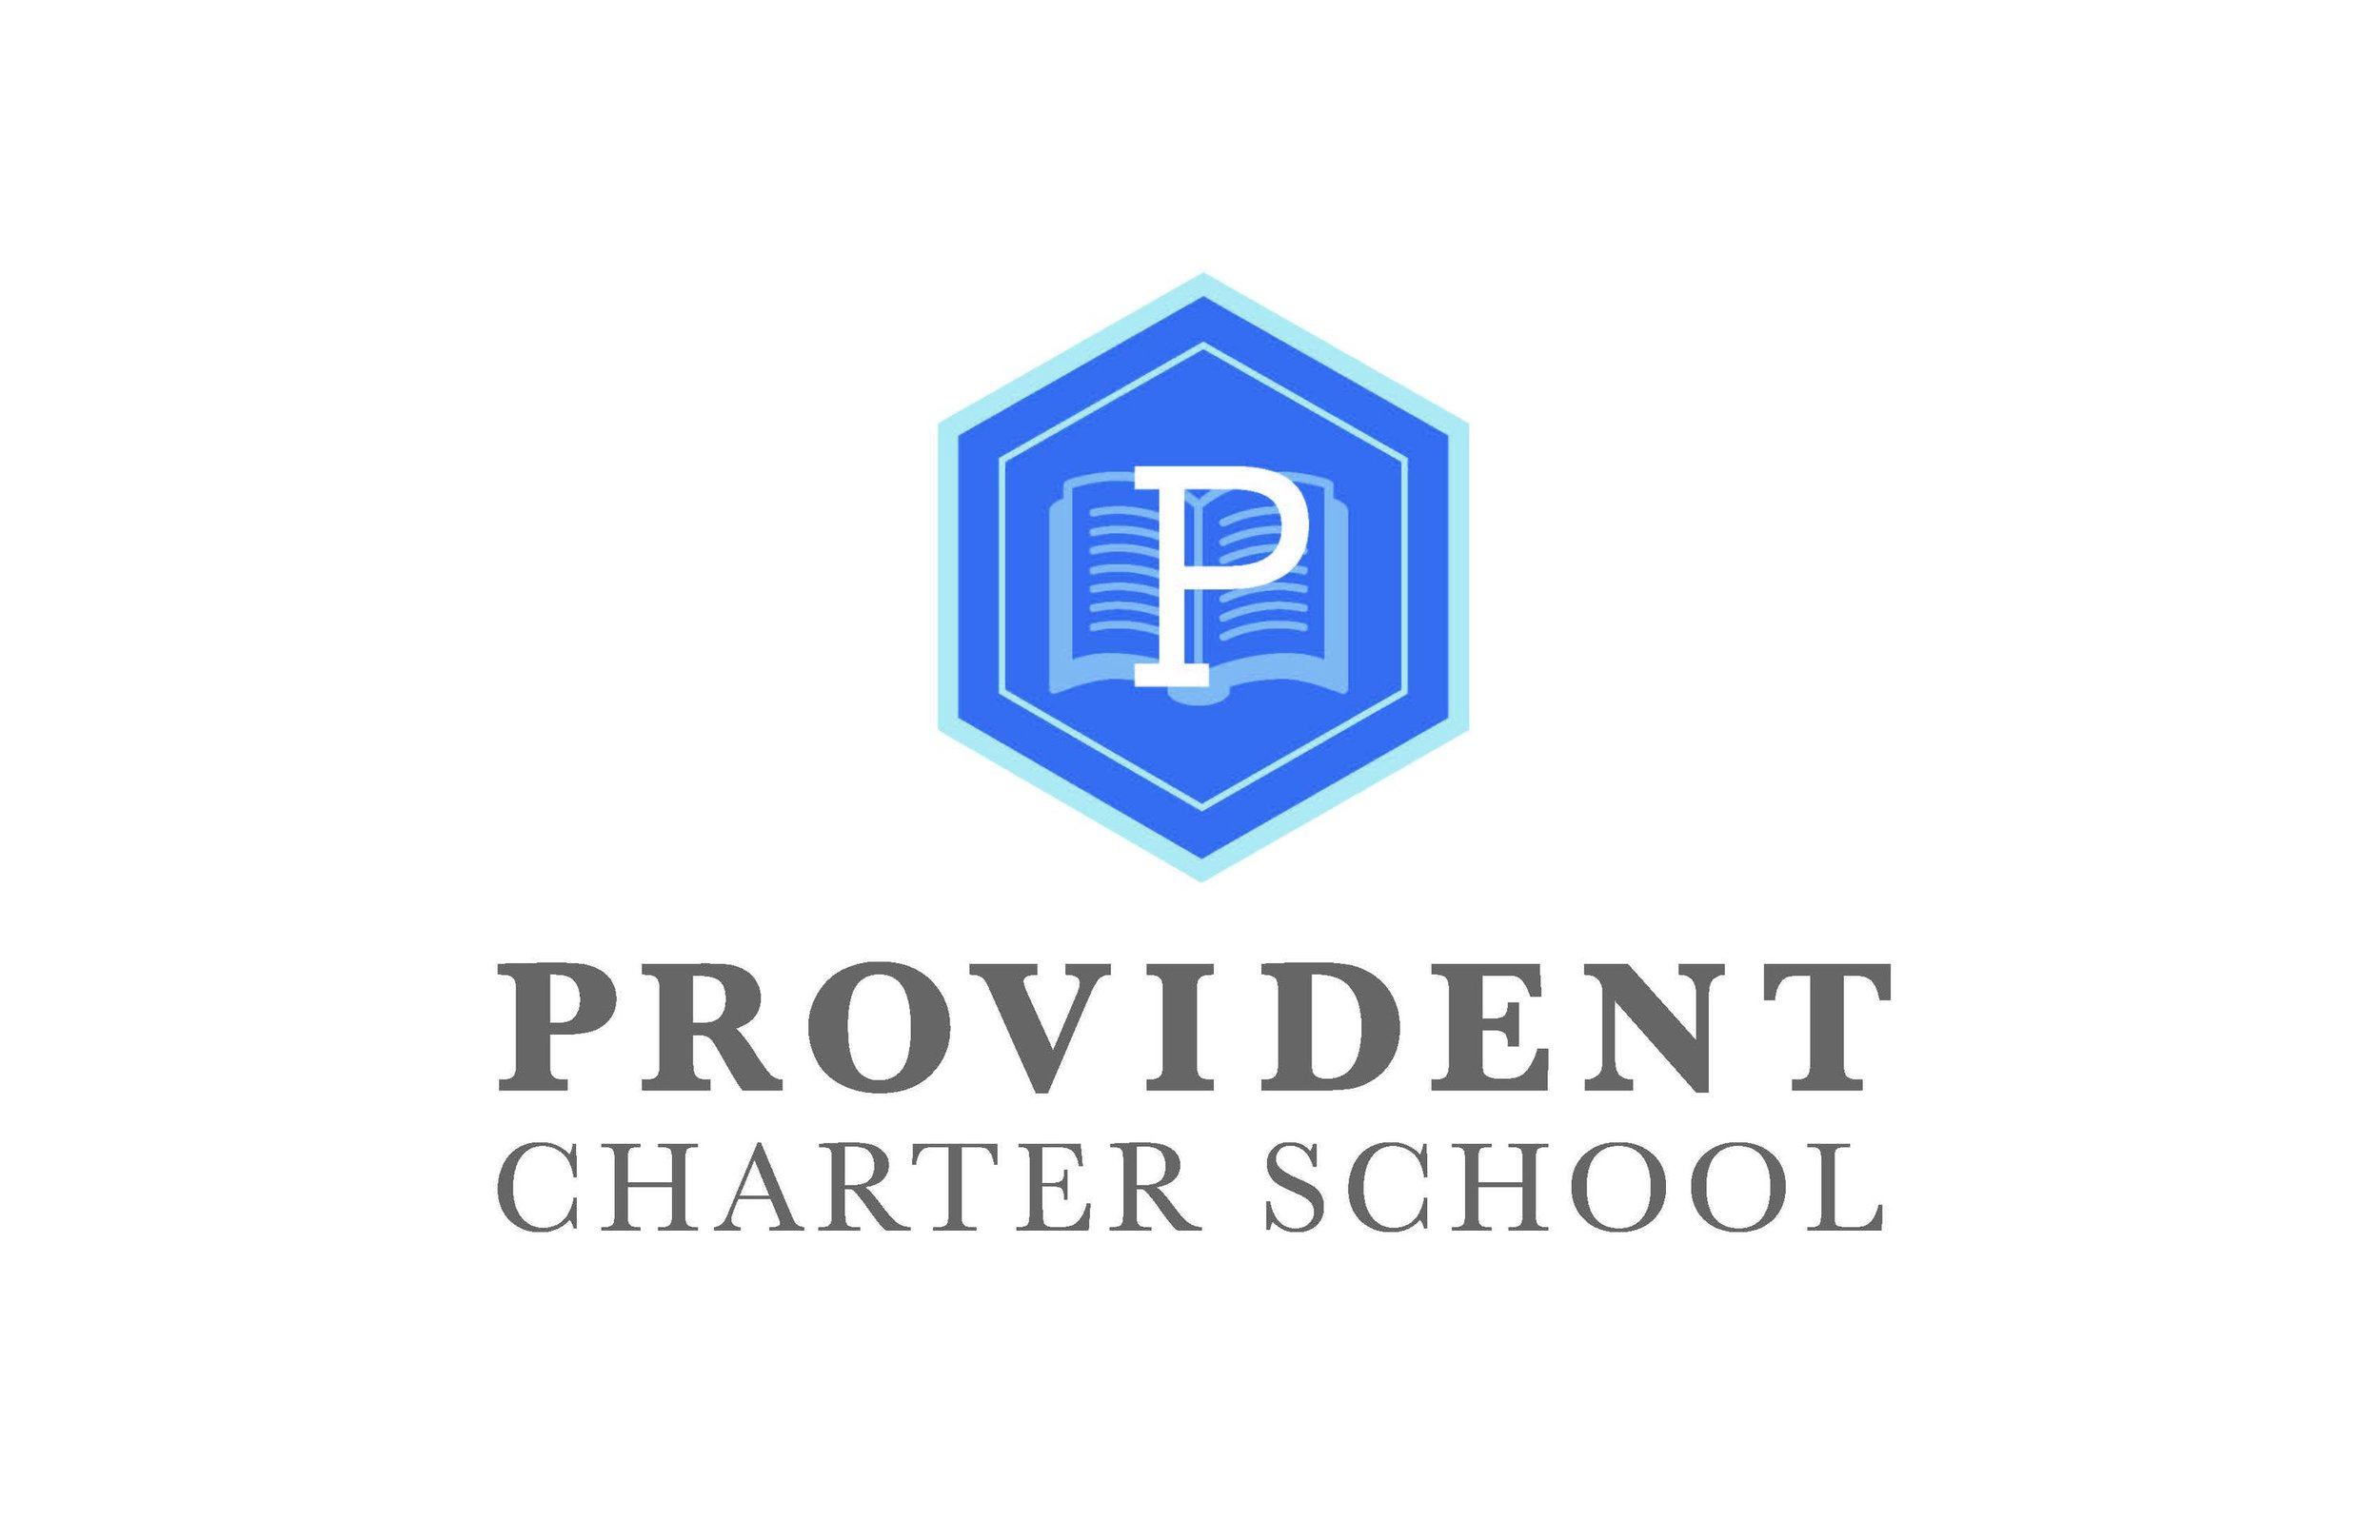 Provident-Charter-School-logo.jpg